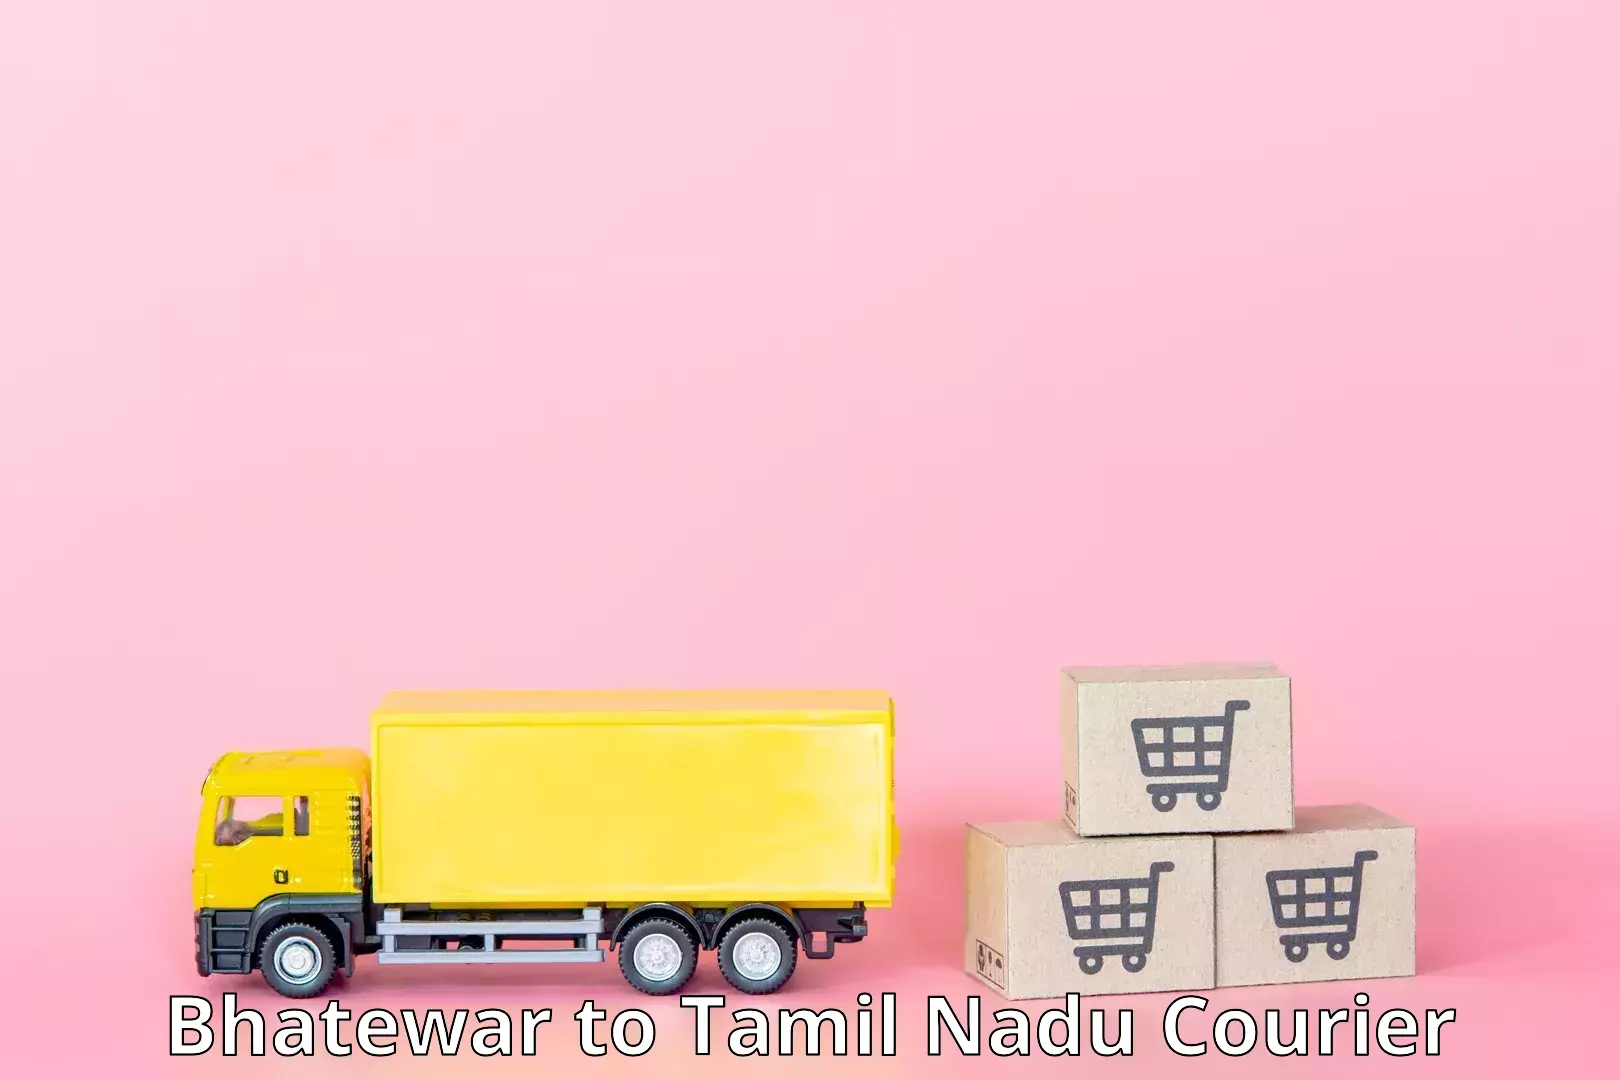 Efficient parcel service Bhatewar to Tamil Nadu